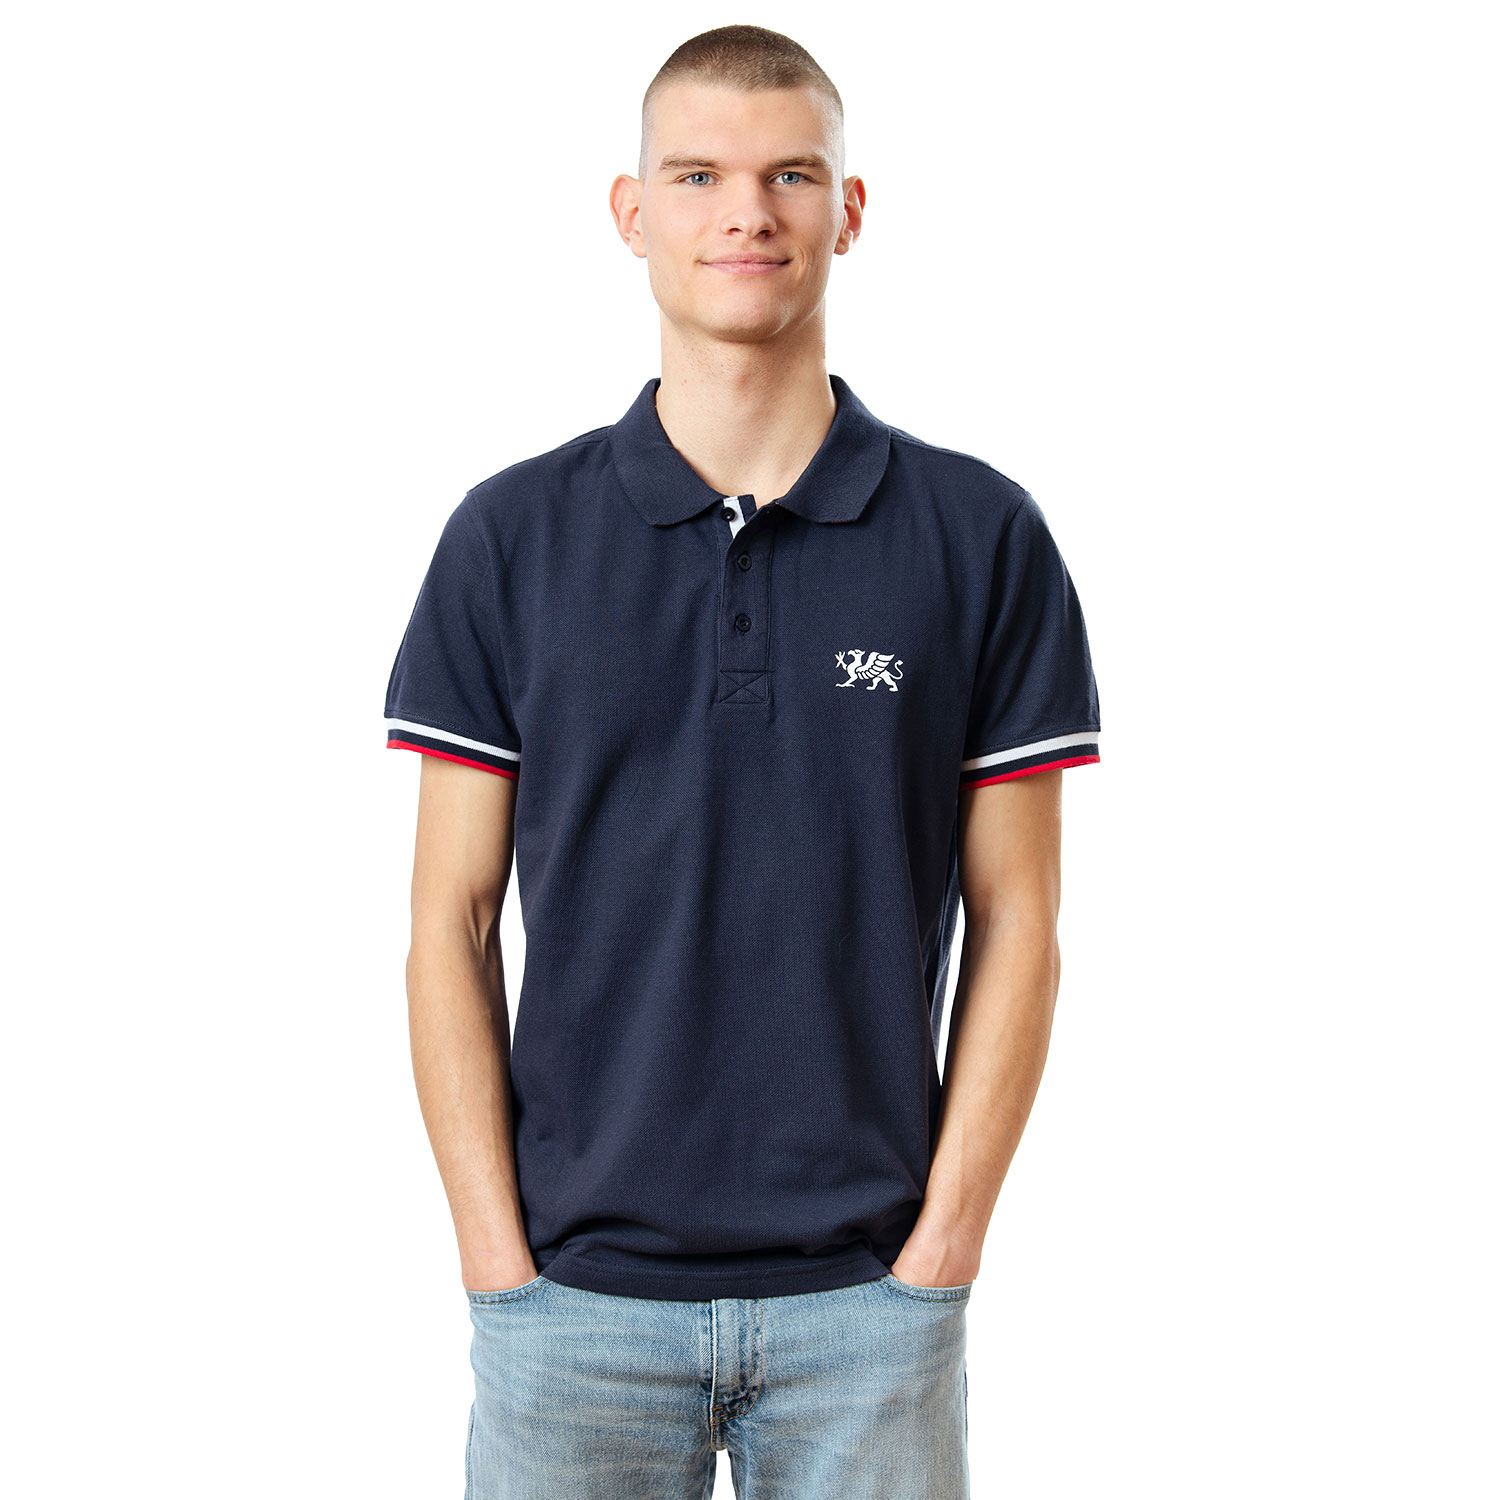 Rostocker Polo-Shirt, dunkelblau